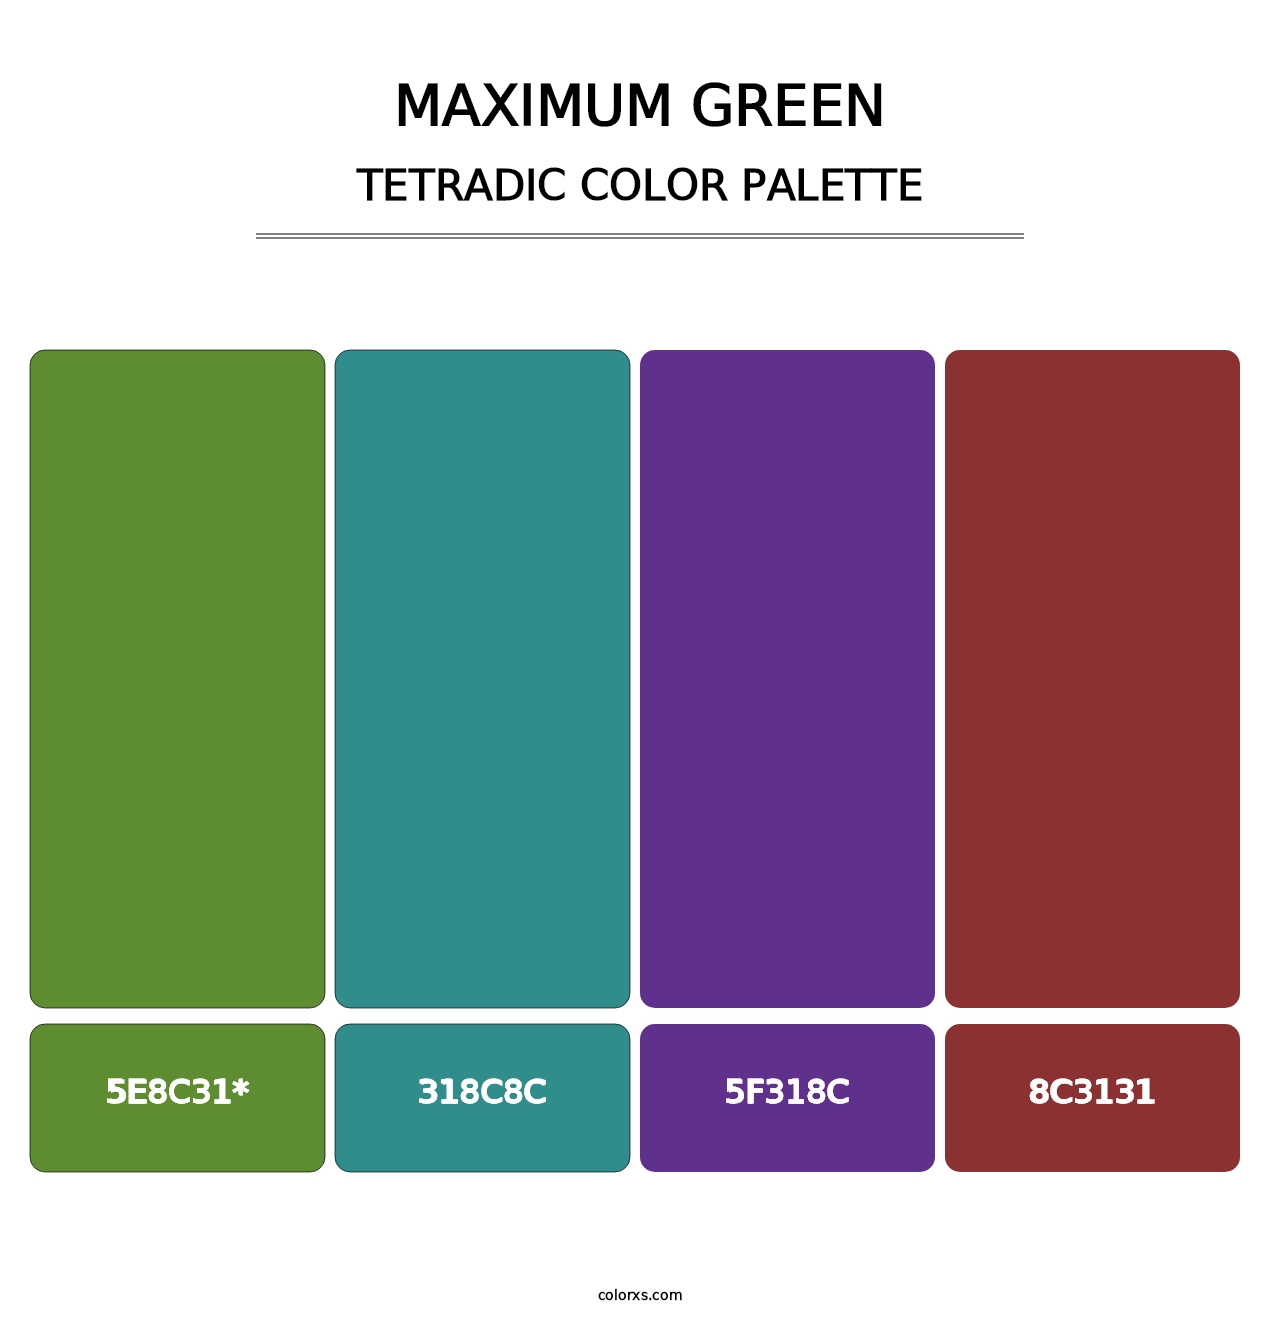 Maximum Green - Tetradic Color Palette